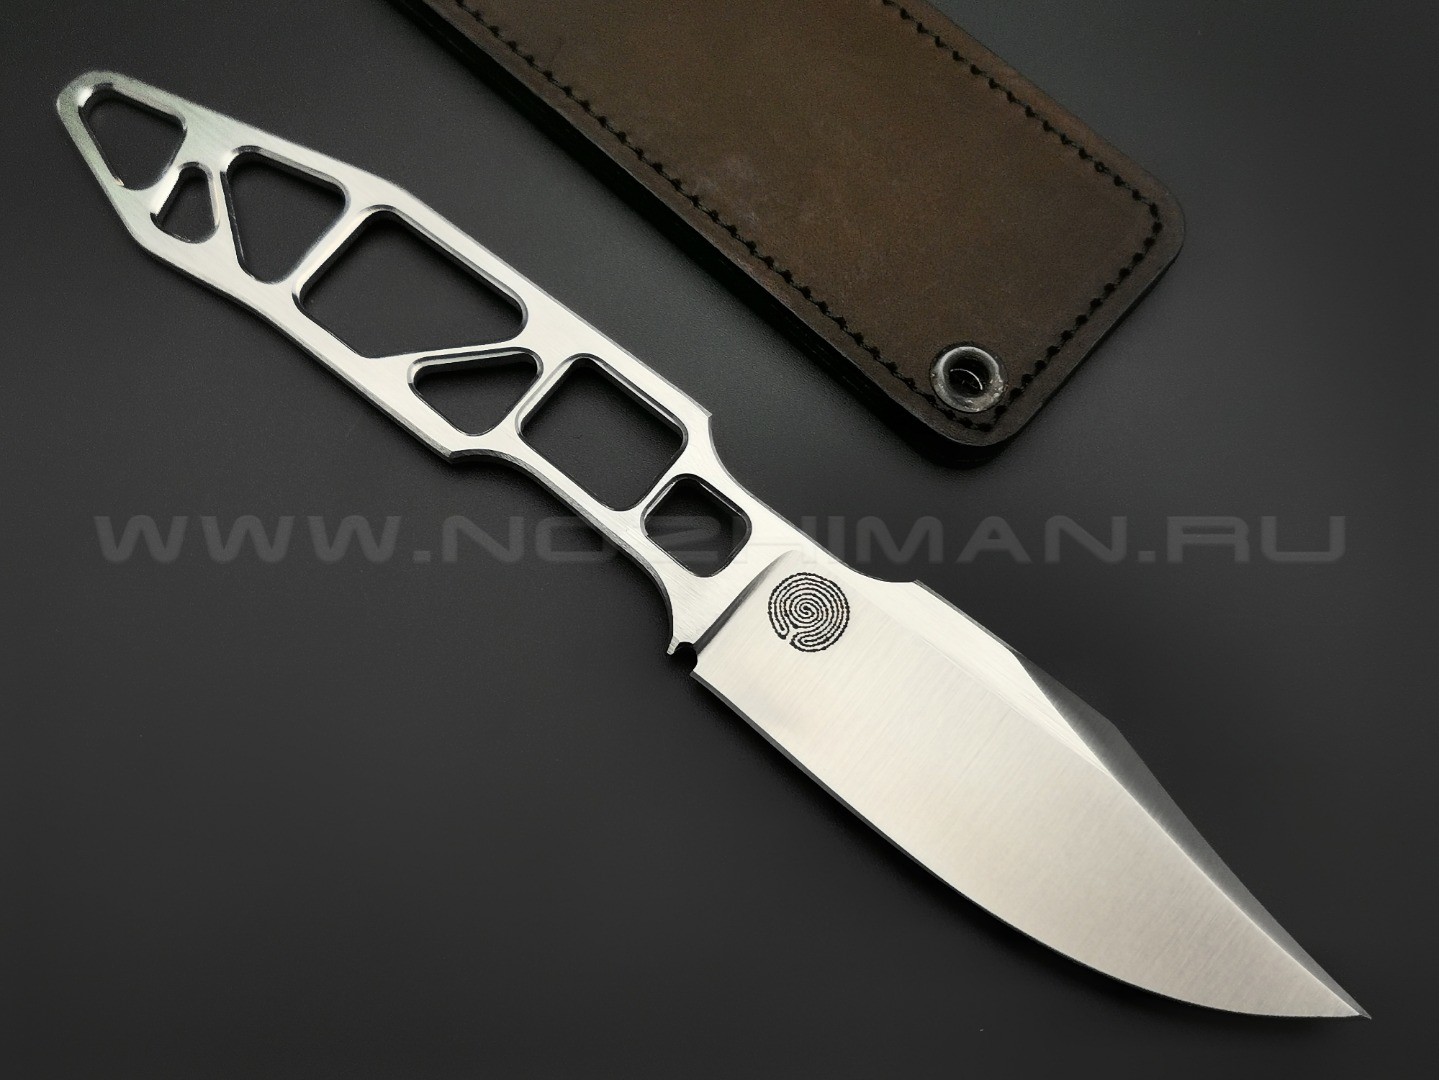 1-й Цех нож С.Дизайн №1 сталь 440C сатин, рукоять сталь